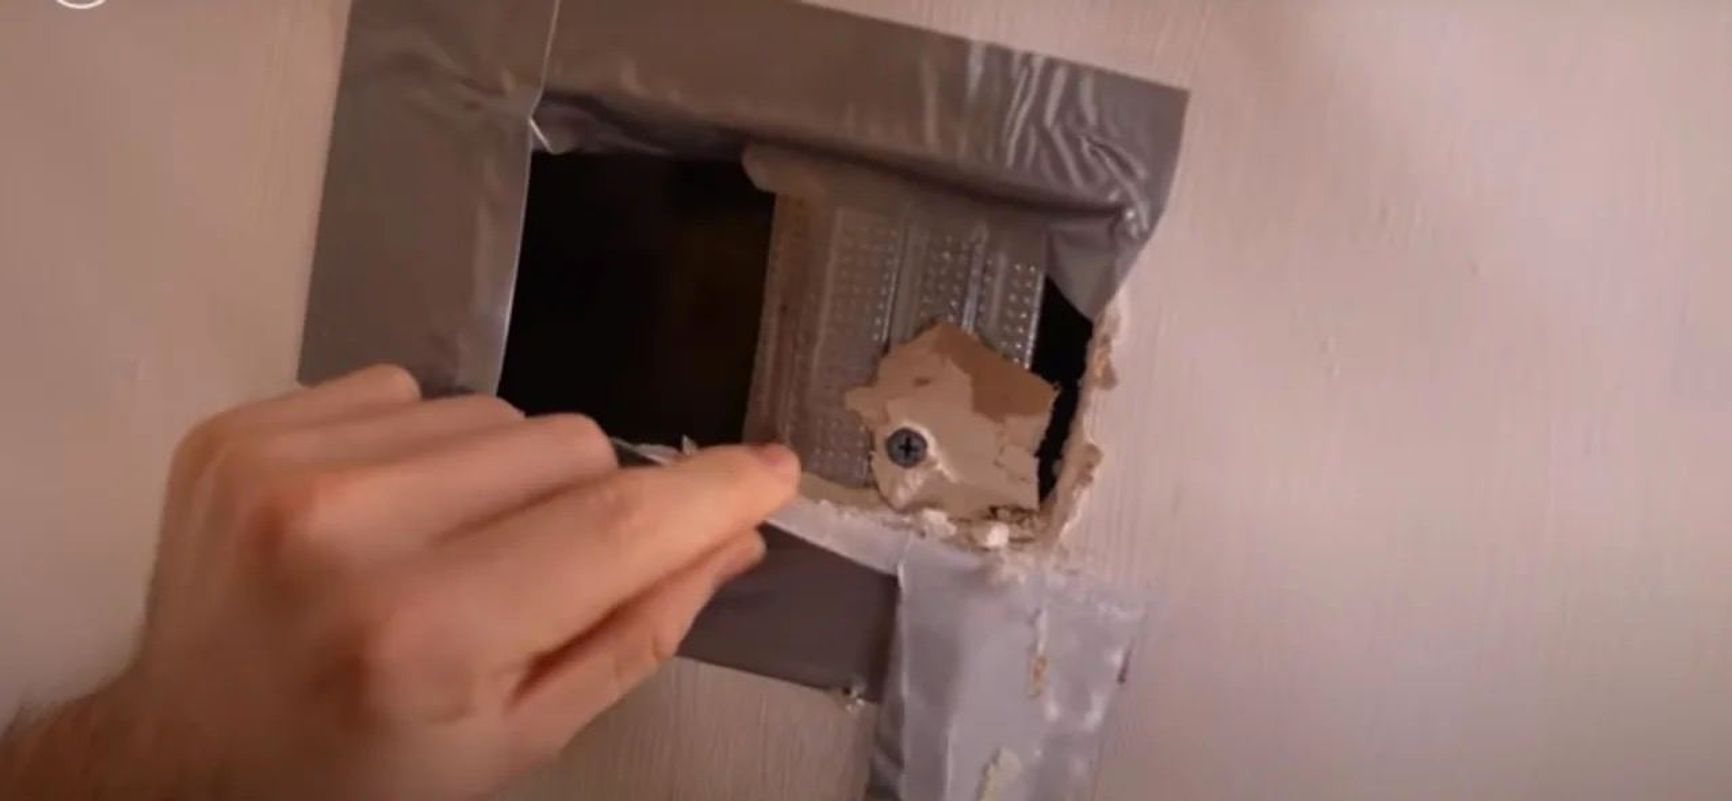 Вероятное место установки скрытой камеры в стене за вешалкой в одной из комнат